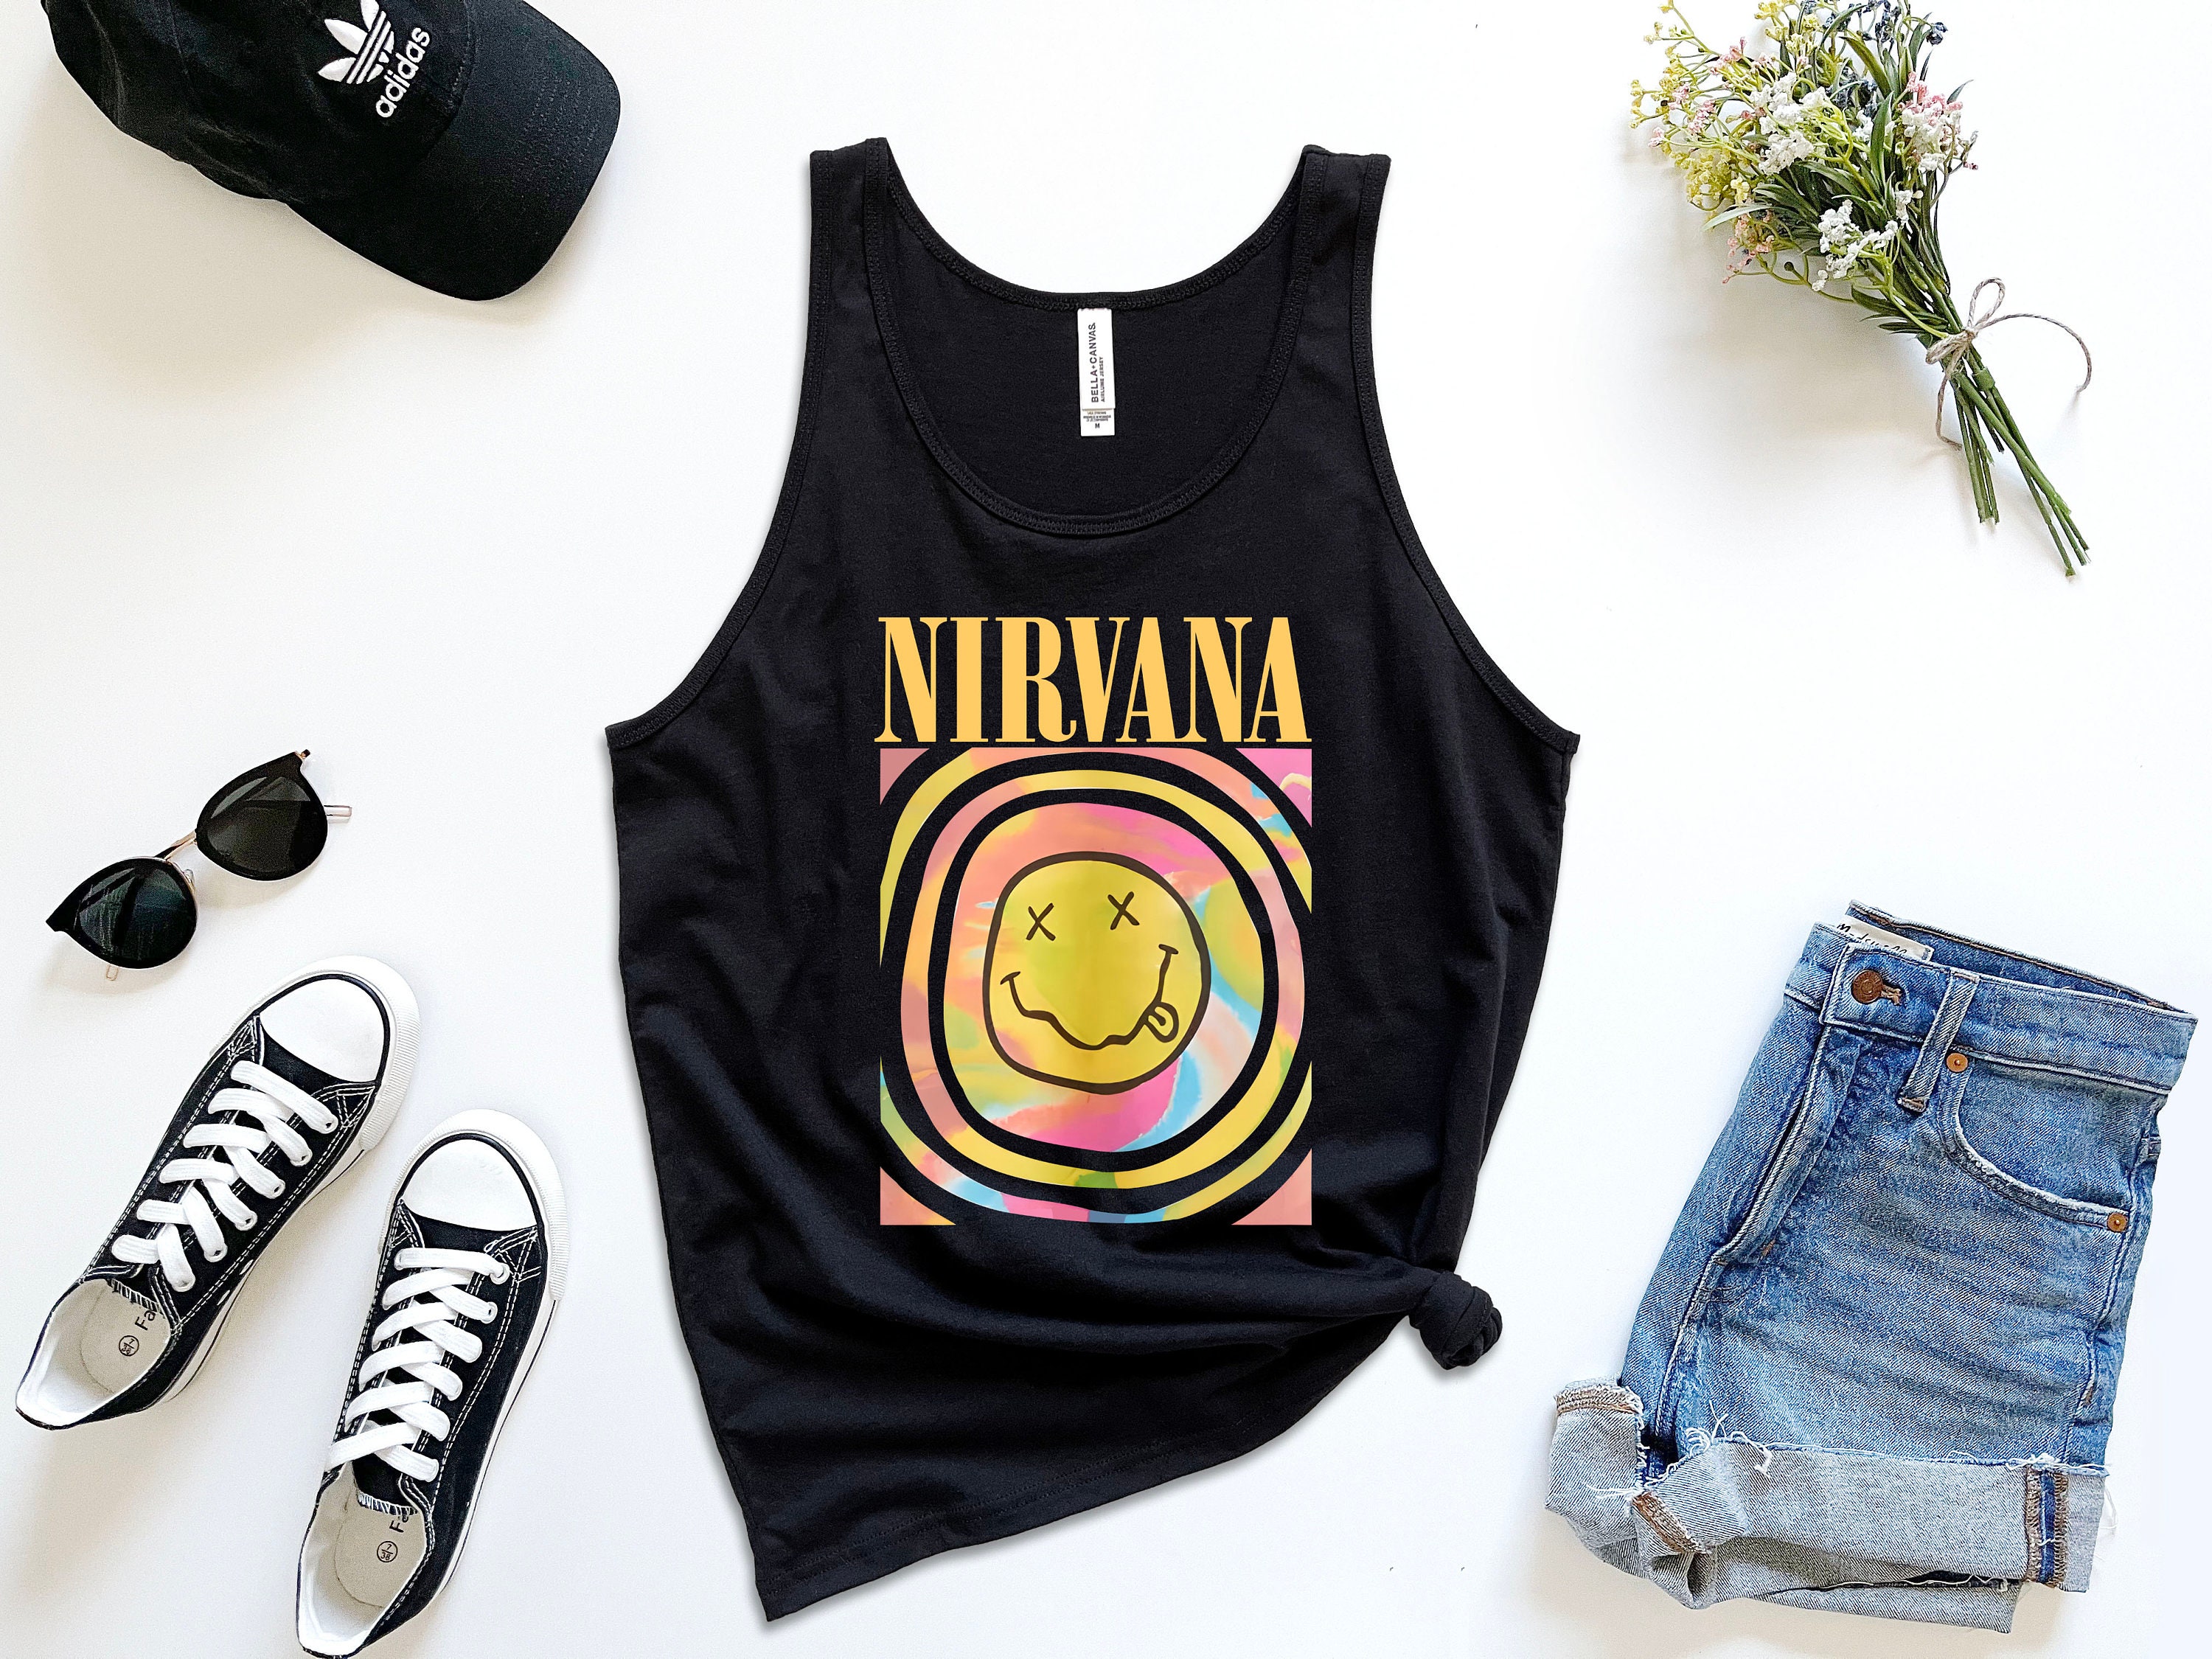 Nirvana Tank Top - Etsy